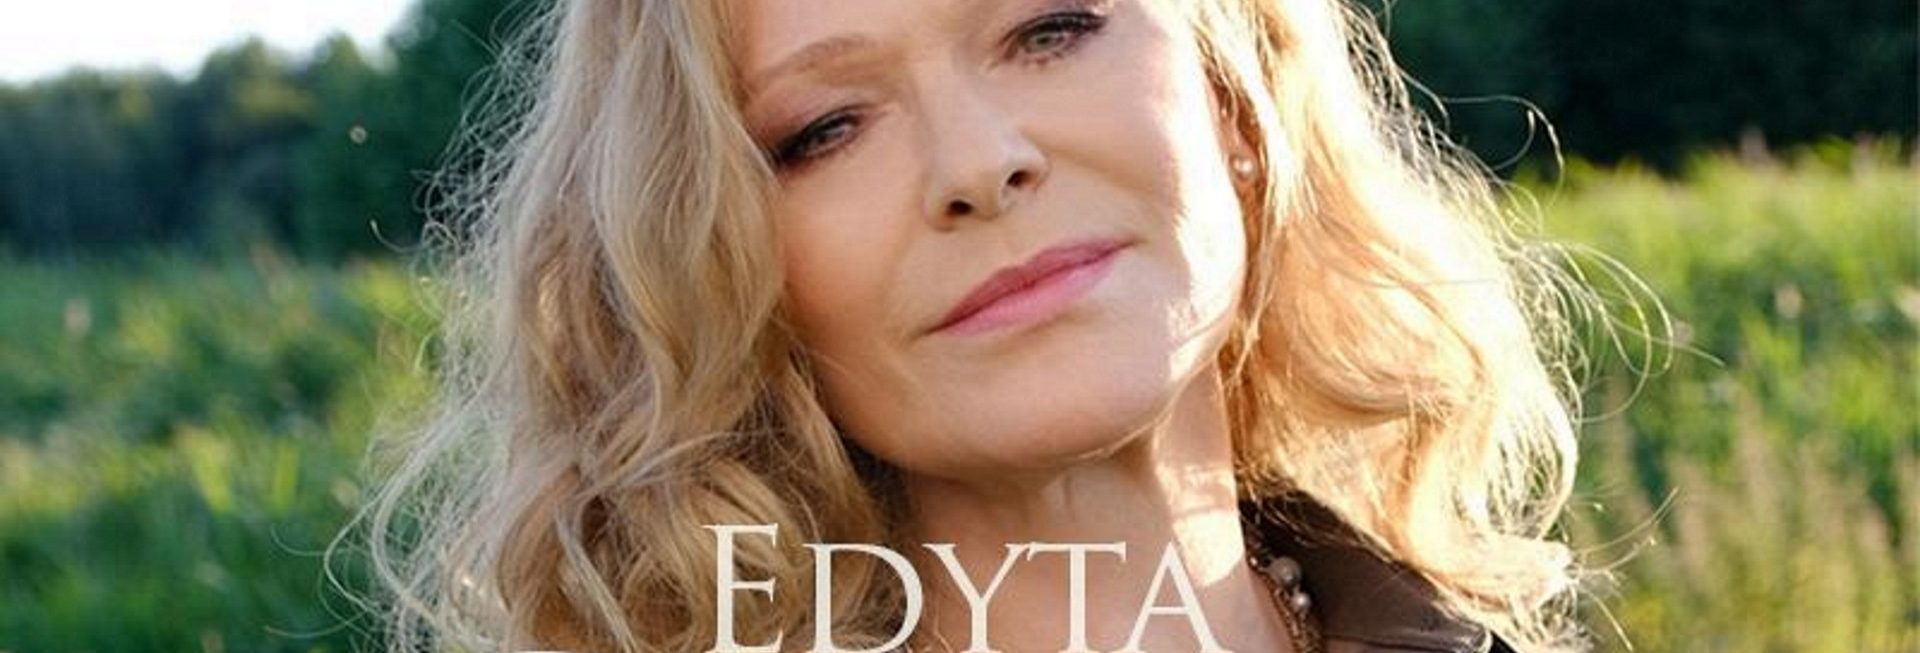 Zdjęcie - plakat na którym widoczna jest artystka, piosenkarka Edyta Gepert